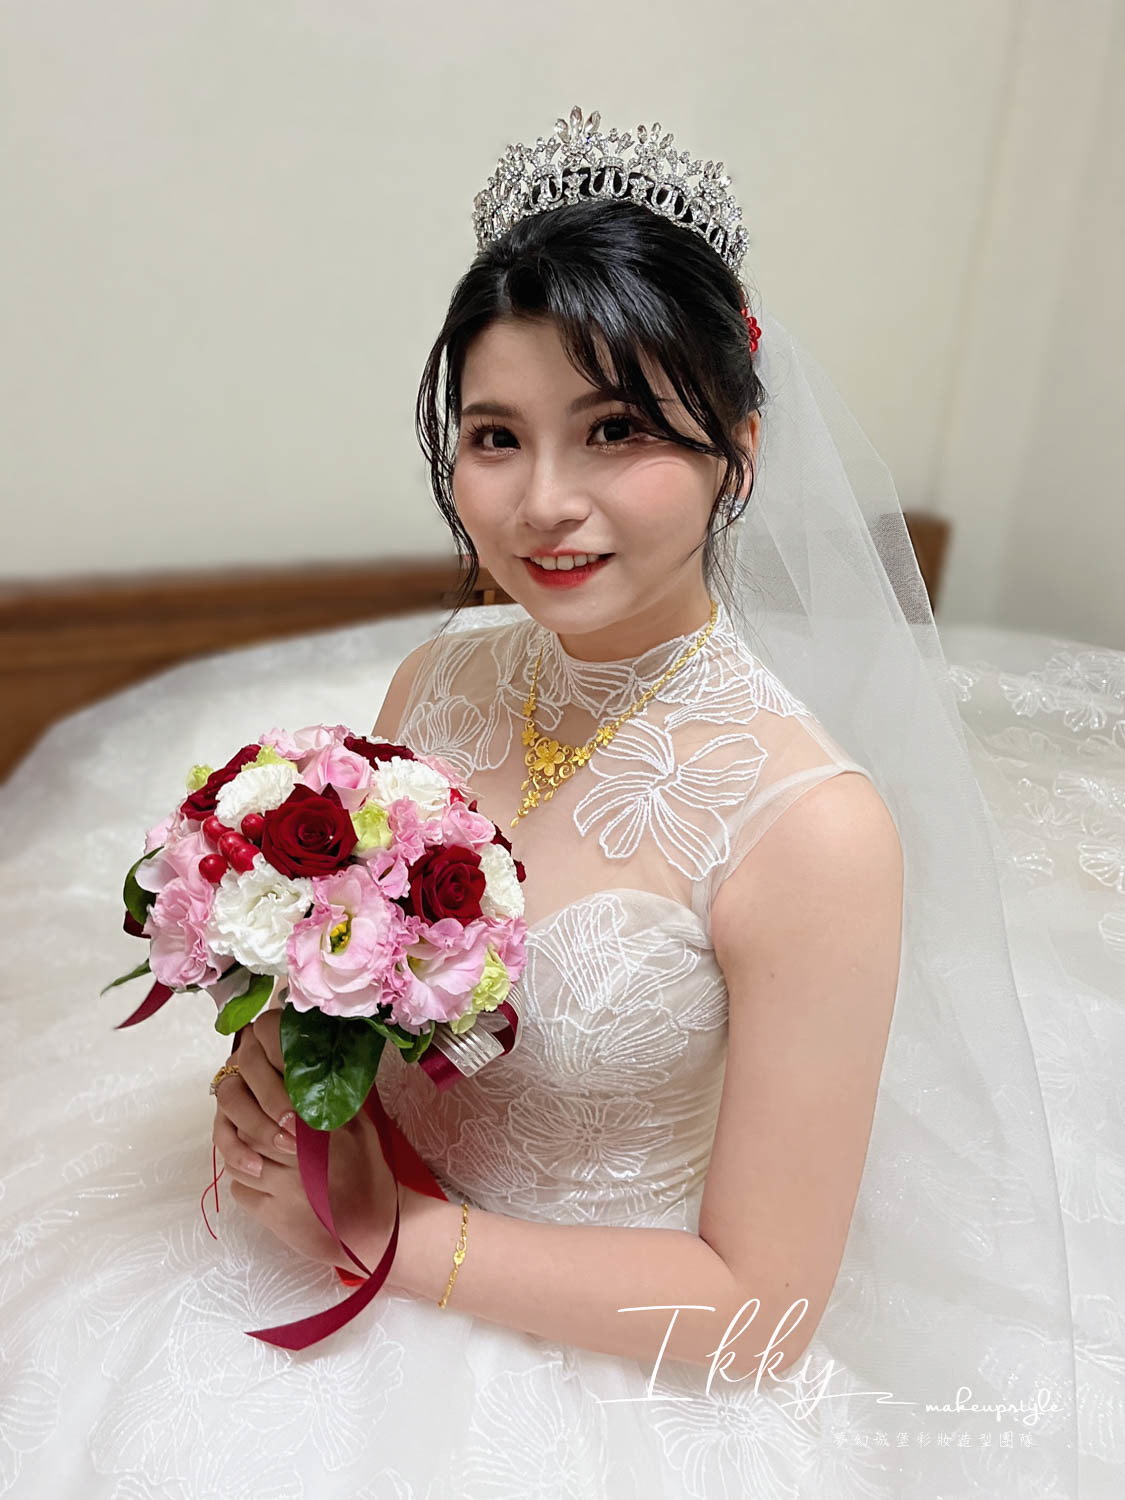 【新秘Ikky】bride佳欣 訂結婚造型 / 時尚女神